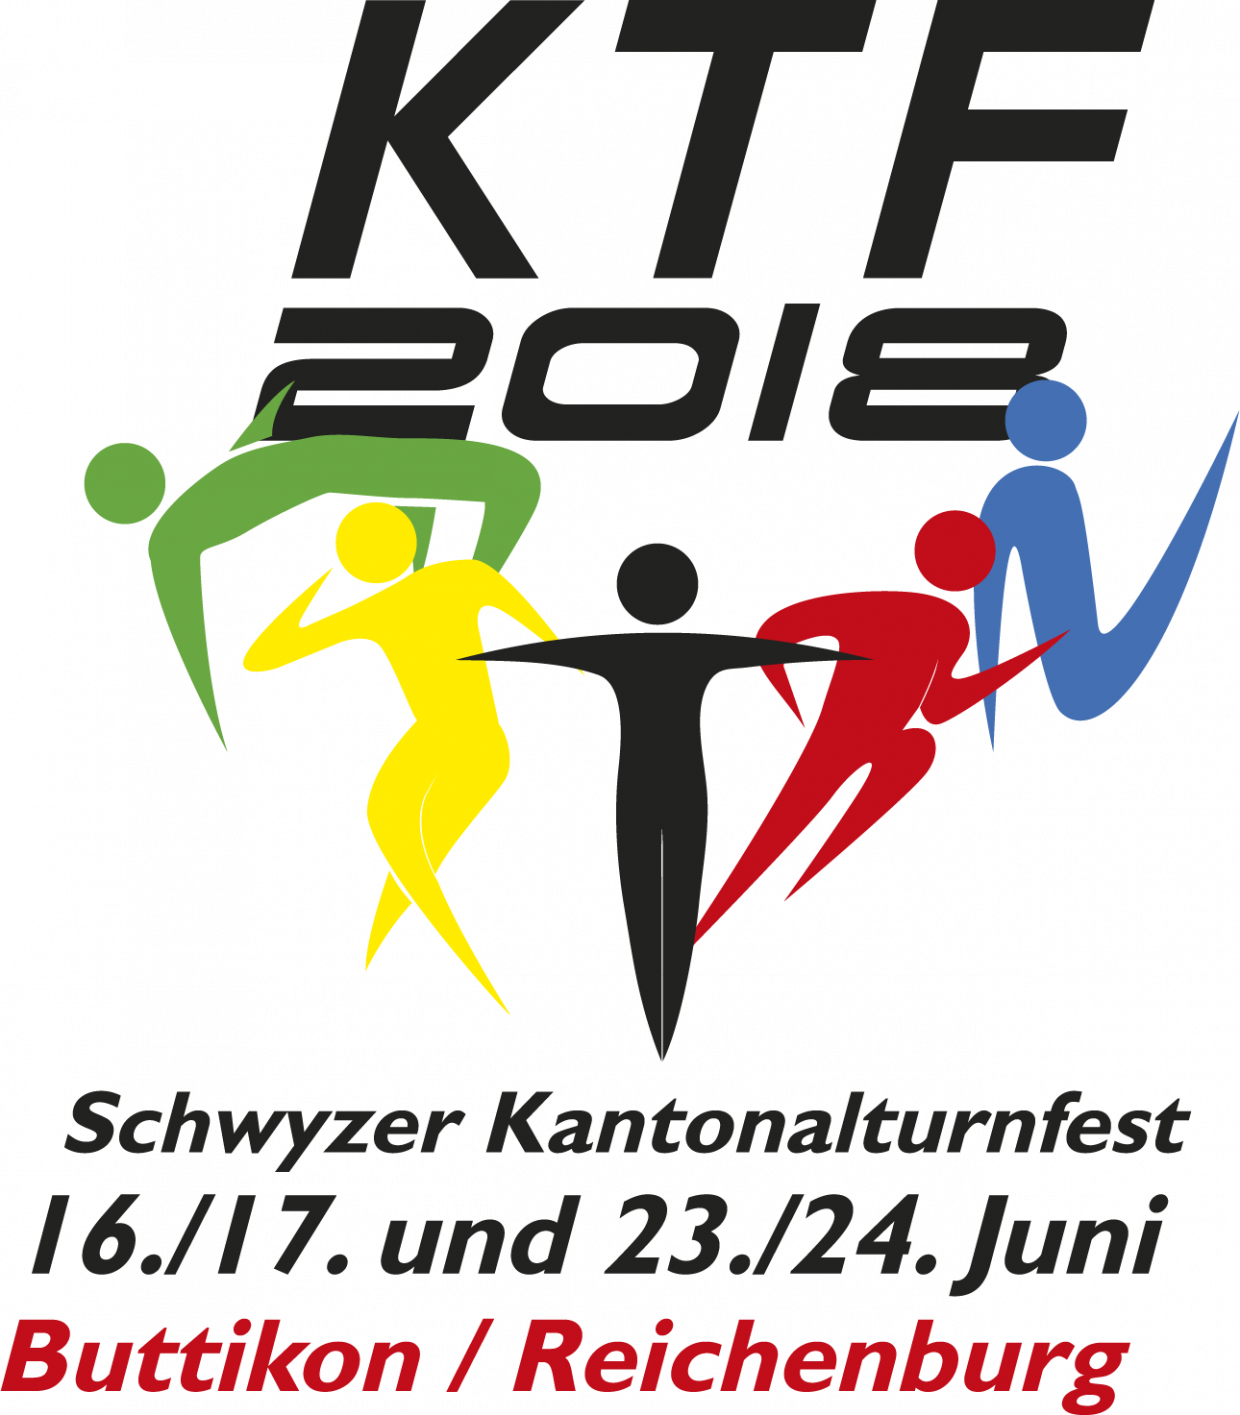 Schwyzer Kantonalturnfest 